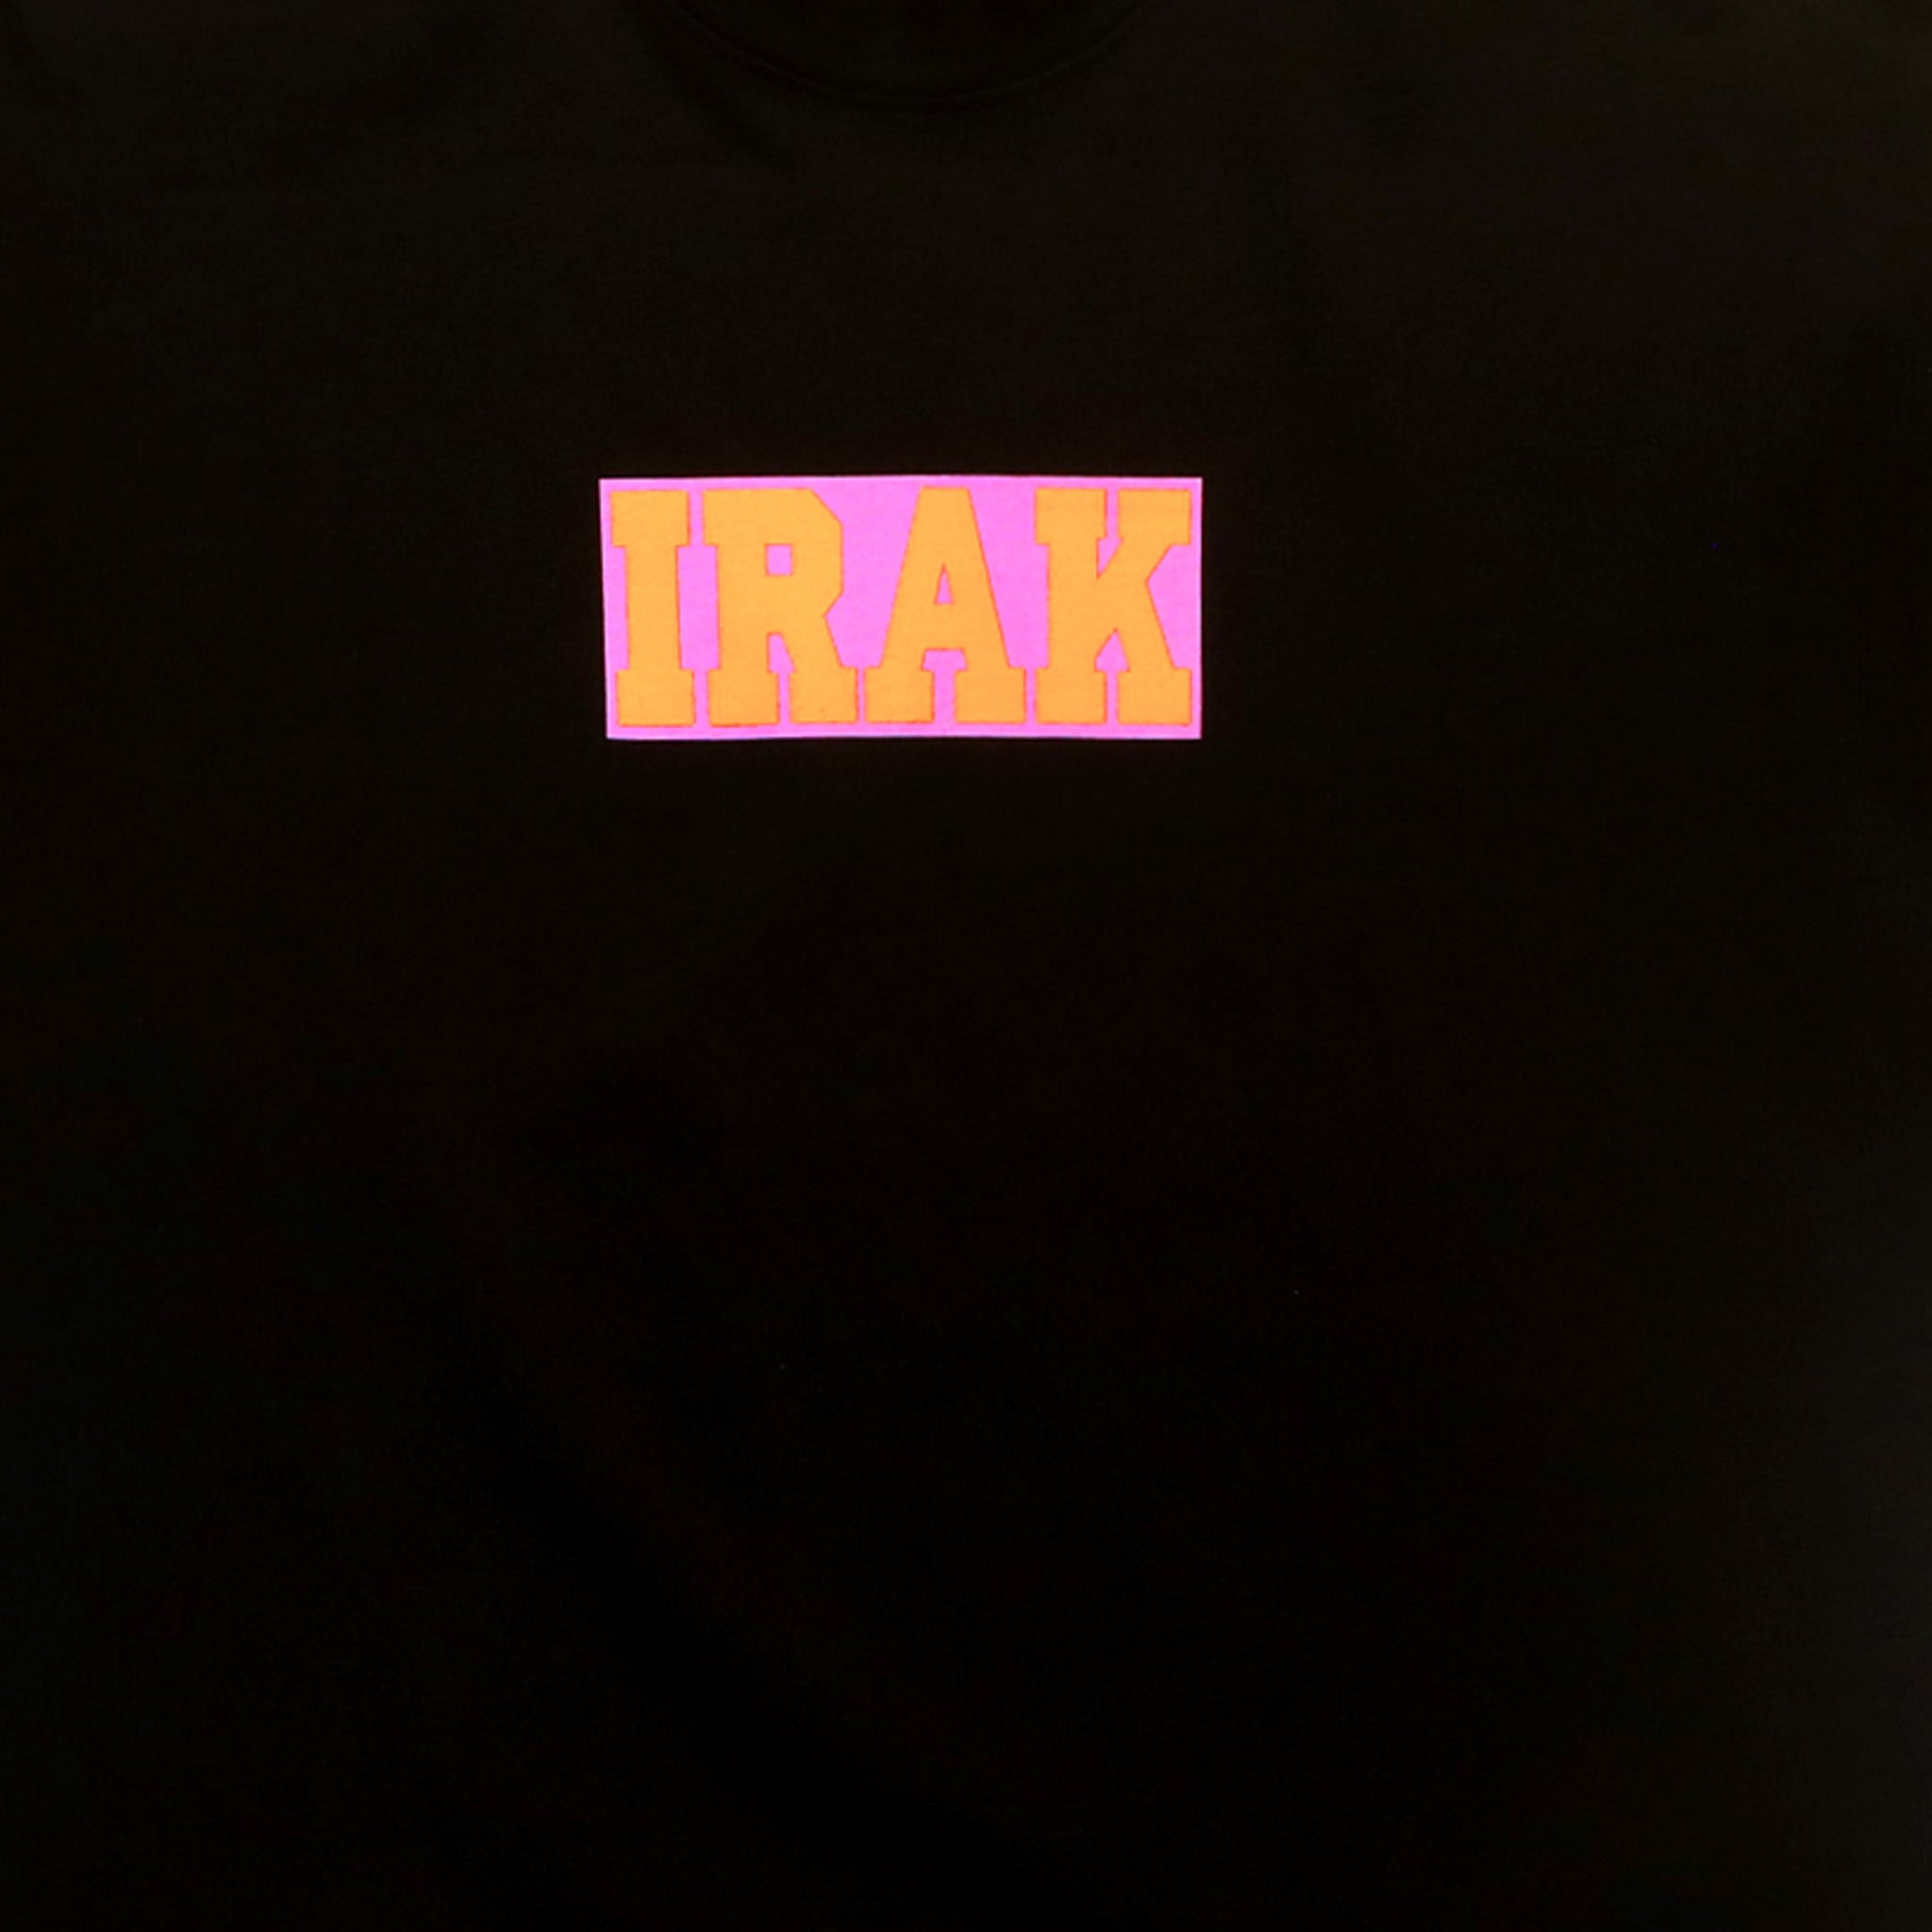 IRAK, Maglietta con logo IRAK al neon (nero)